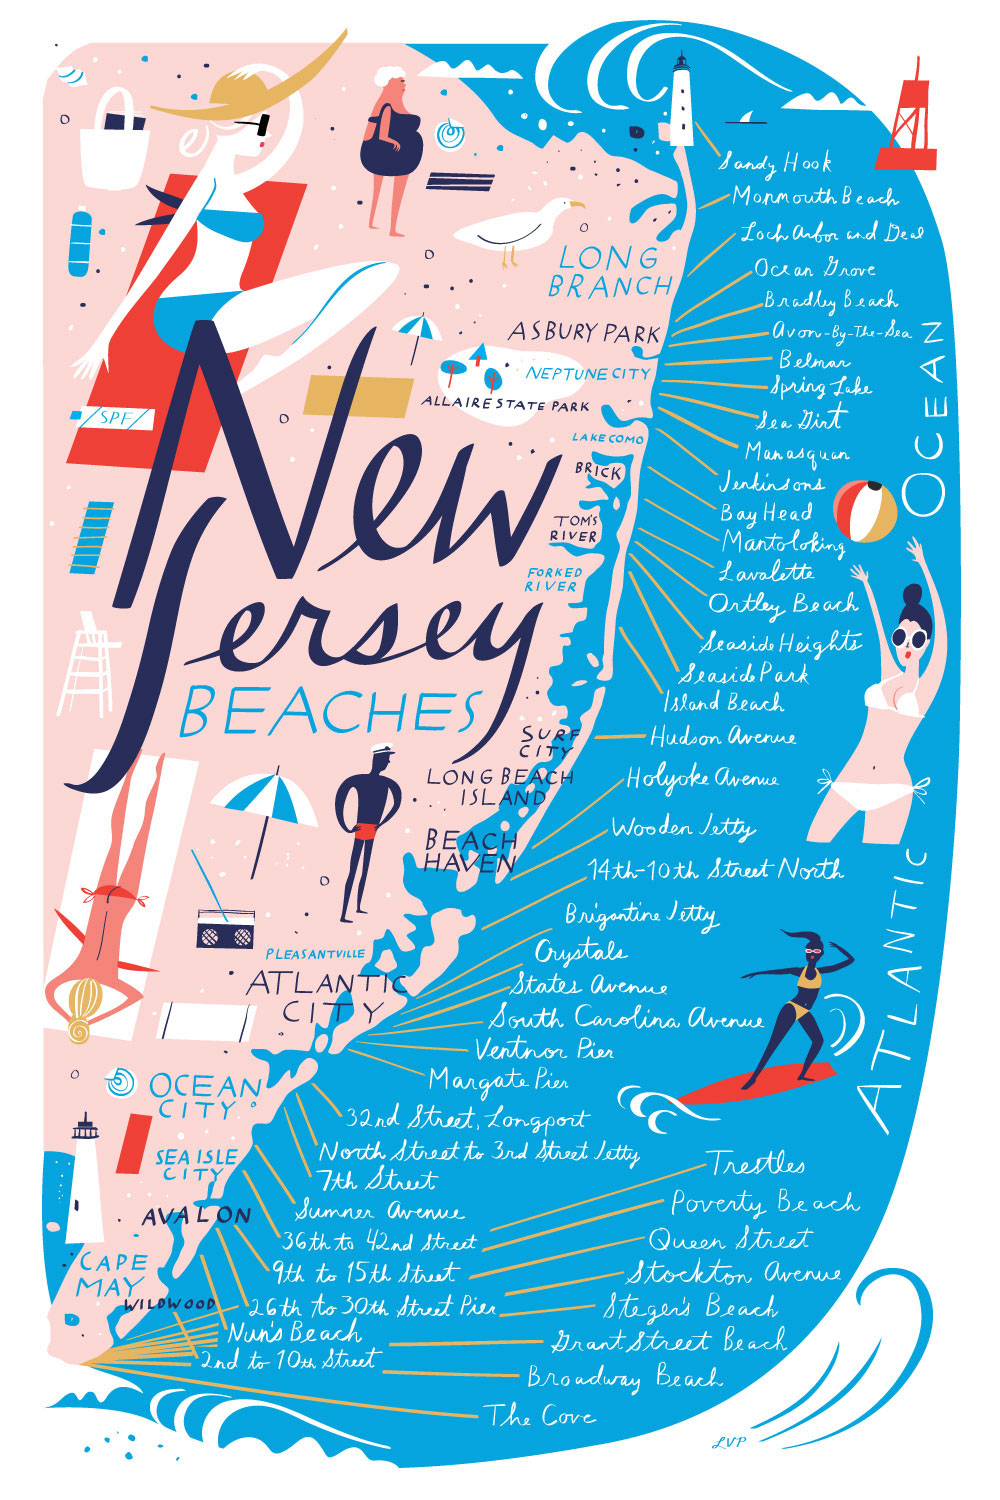 New Jersey Beach Map on Behance